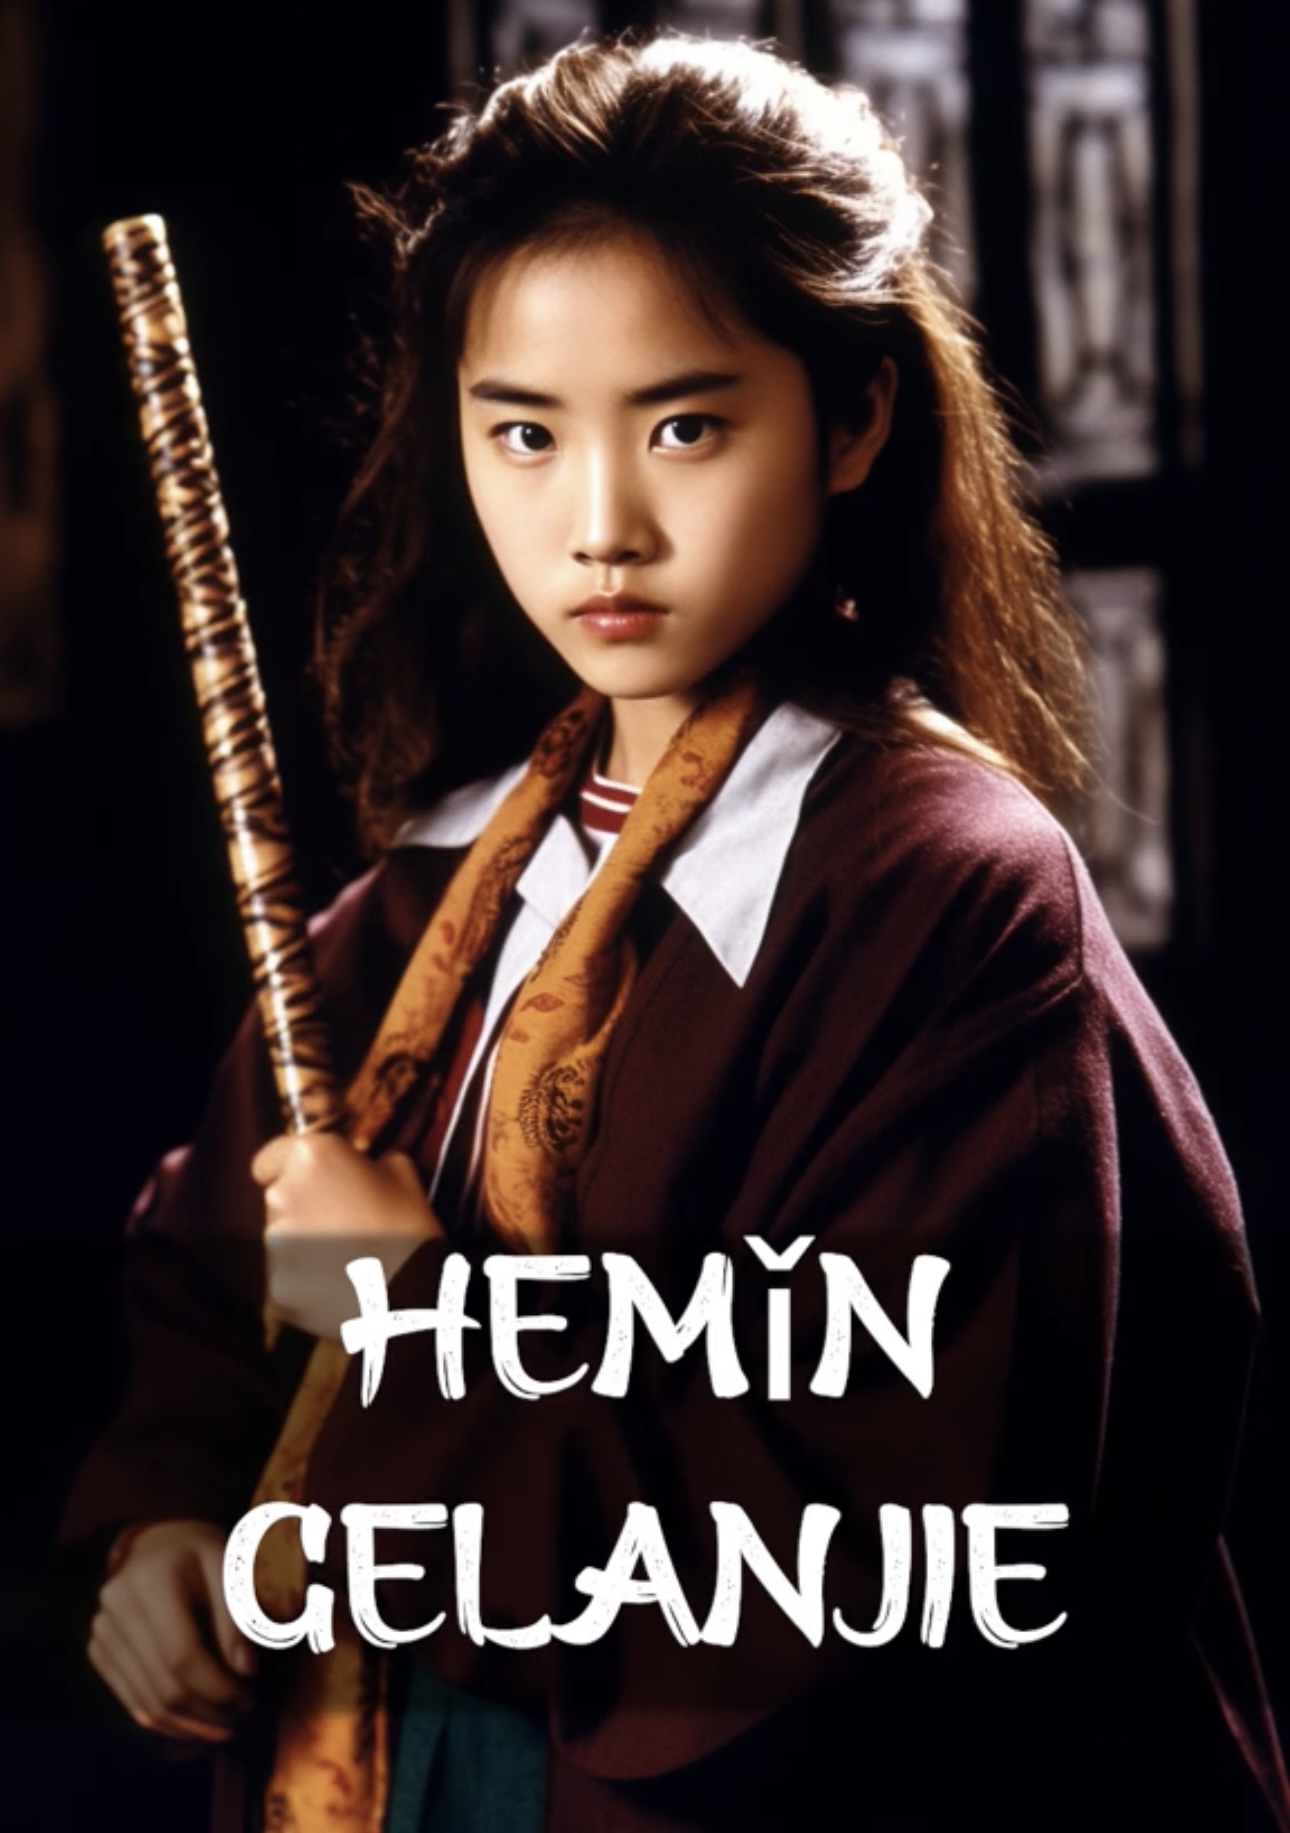 Lạ lùng Harry Potter phiên bản Hoa ngữ, nữ chính gây bất ngờ vì đẹp như minh tinh - Ảnh 4.